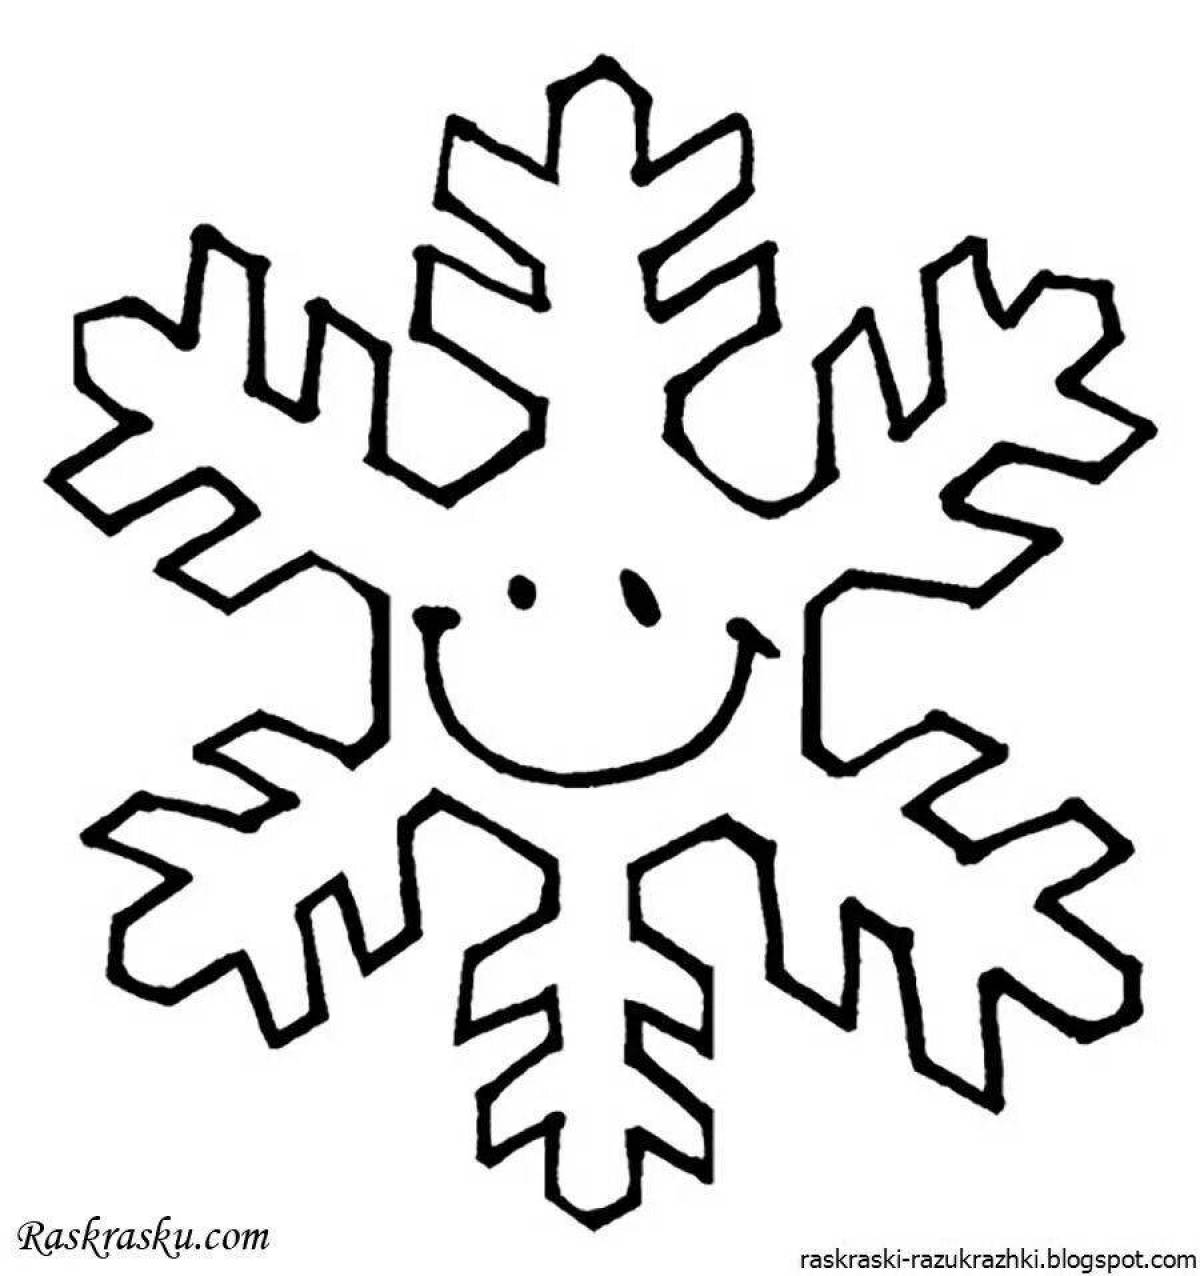 Rampant snowflake coloring book for kids